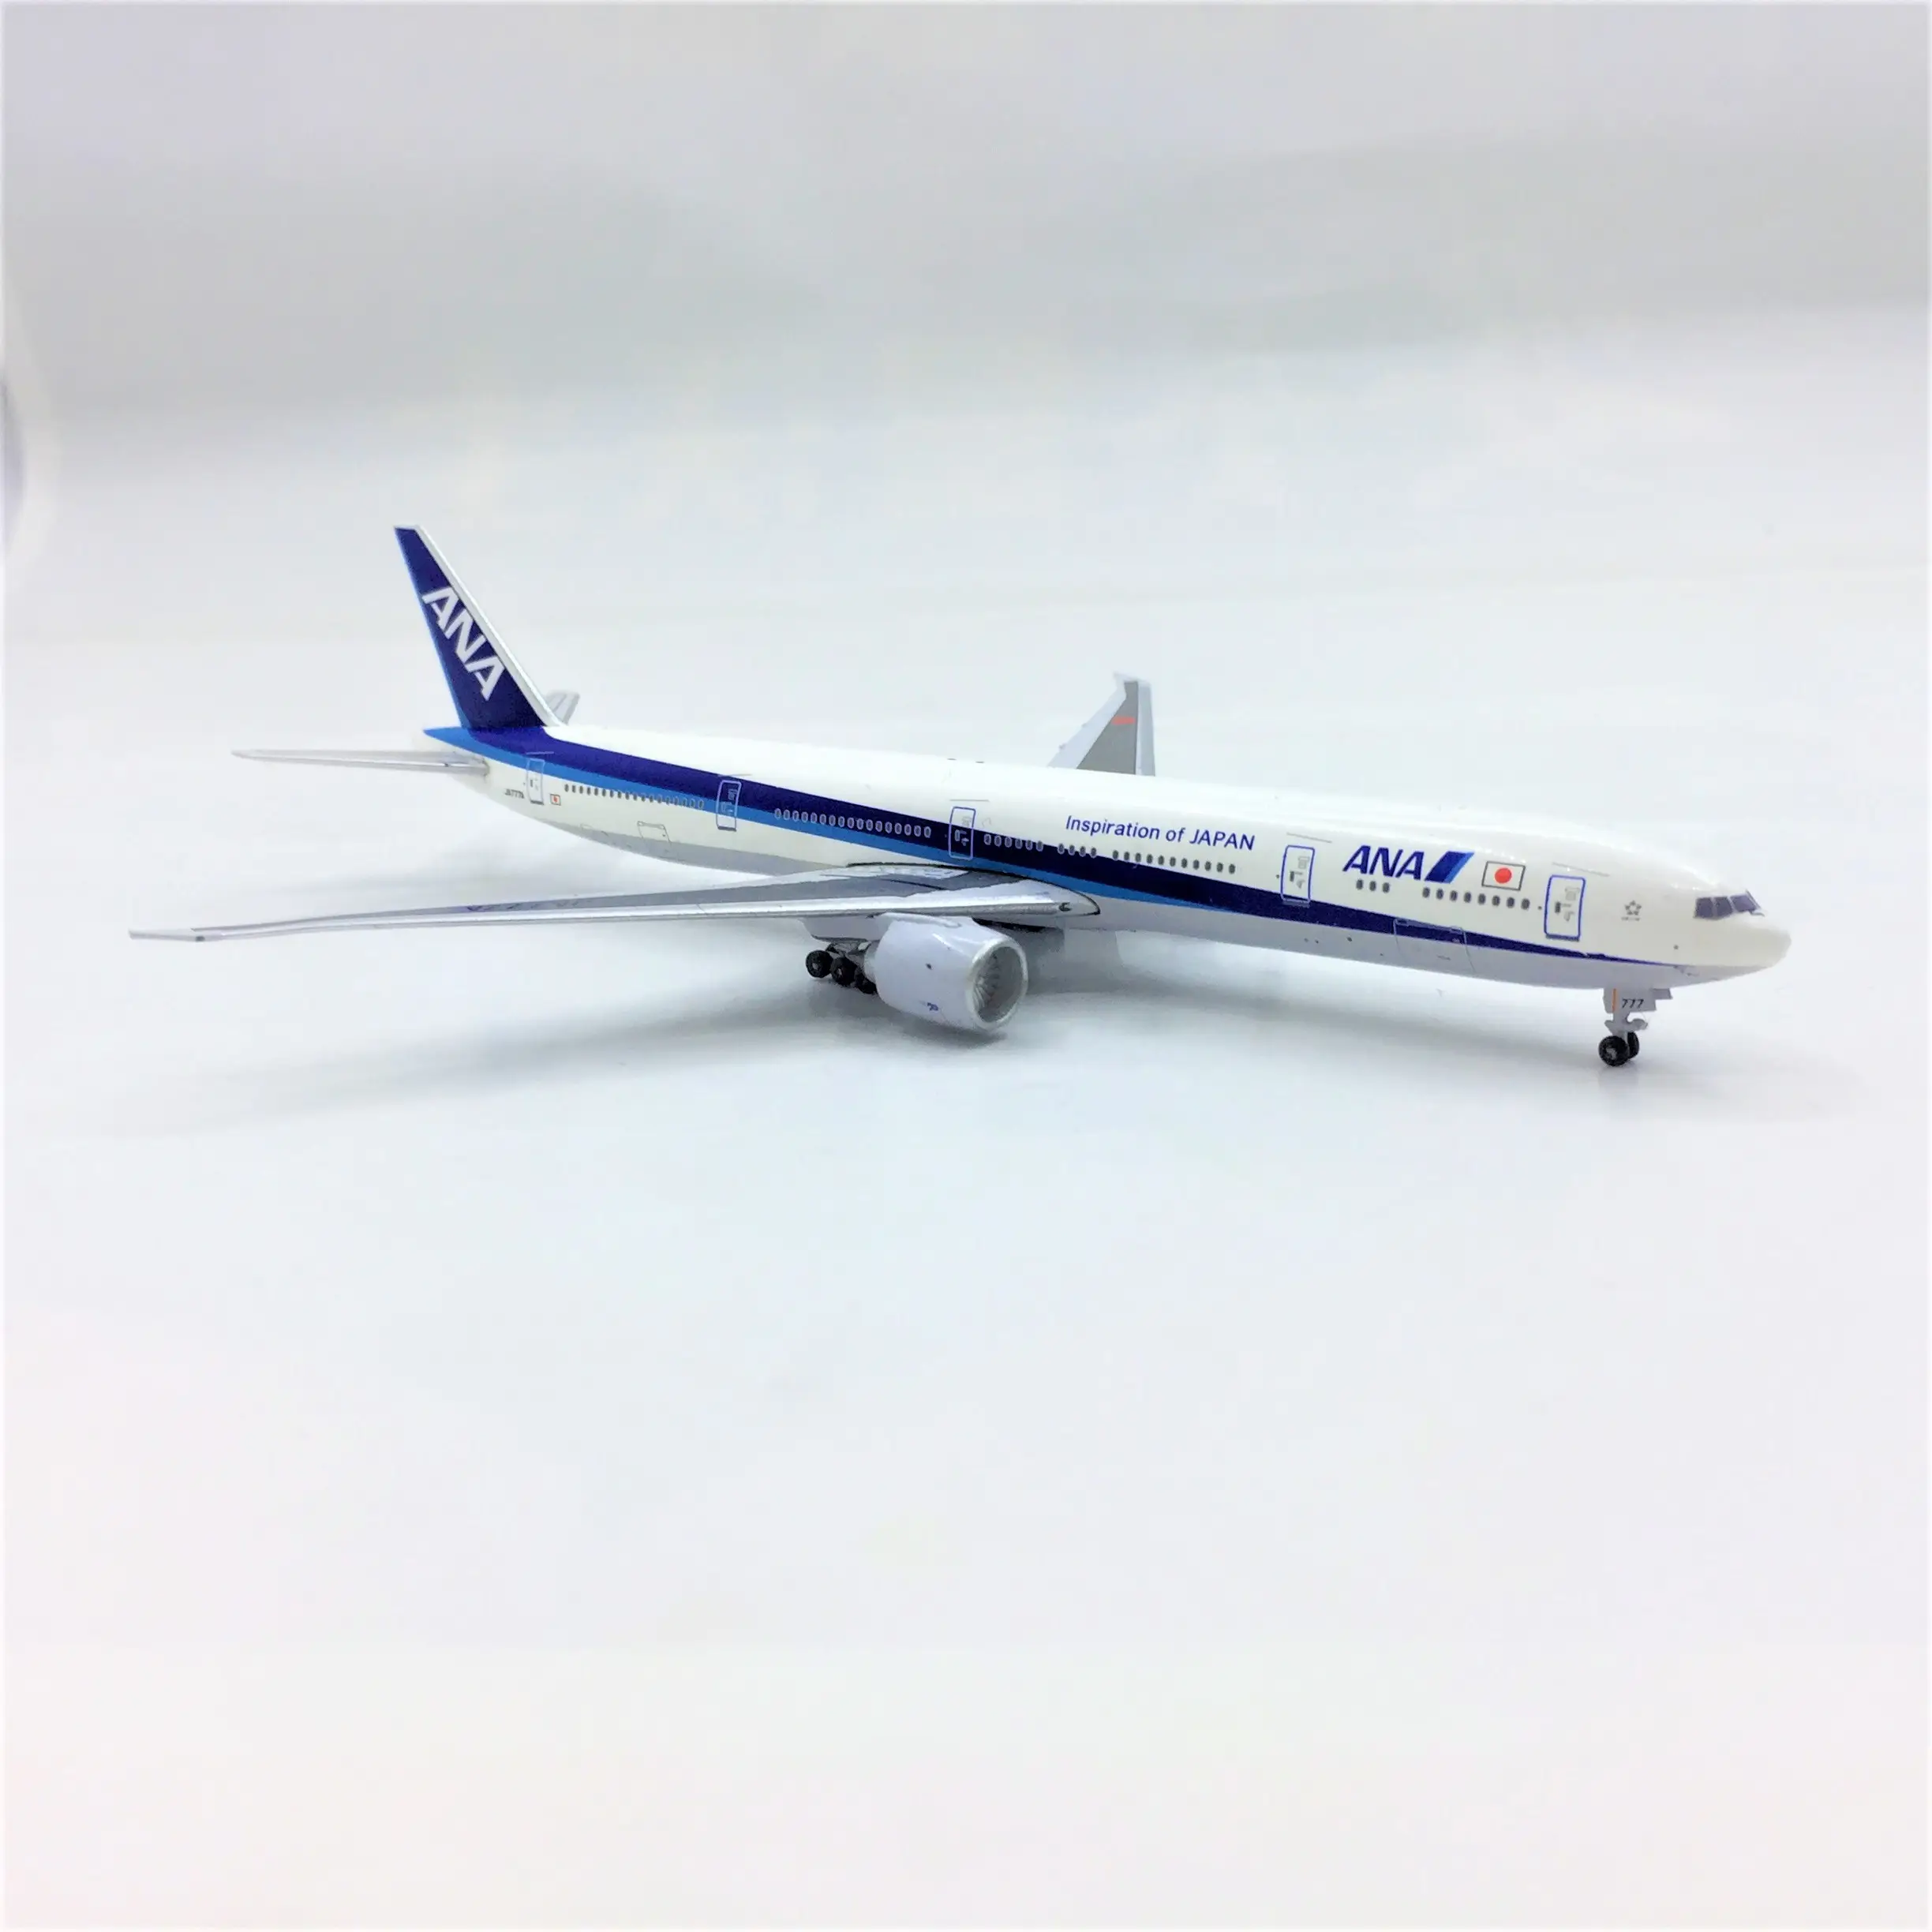 Масштаб 1, 500, Индивидуальная модель самолета 777, высокодетализированная модель самолета из литого под давлением для авиакомпаний ANA airlines